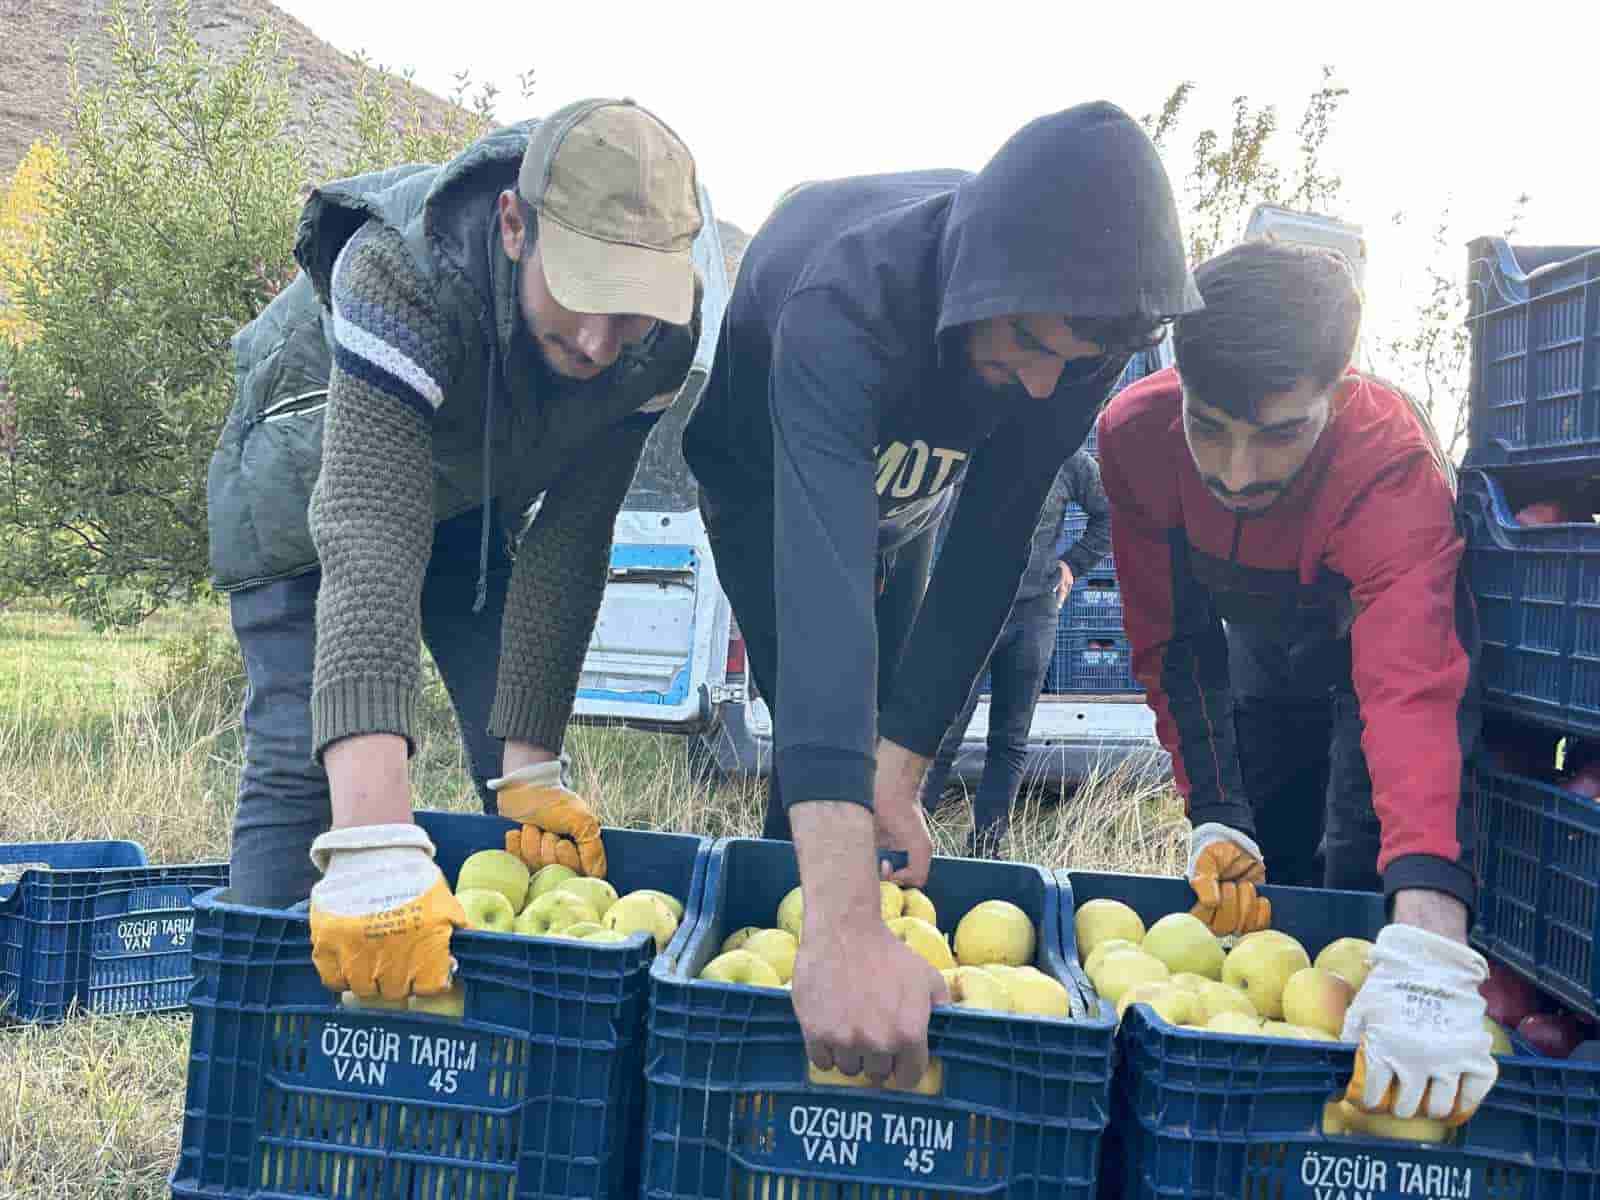 30 yıl önce İran’dan getirdiği meyve ağaçlarından ton ton ürün alıyor